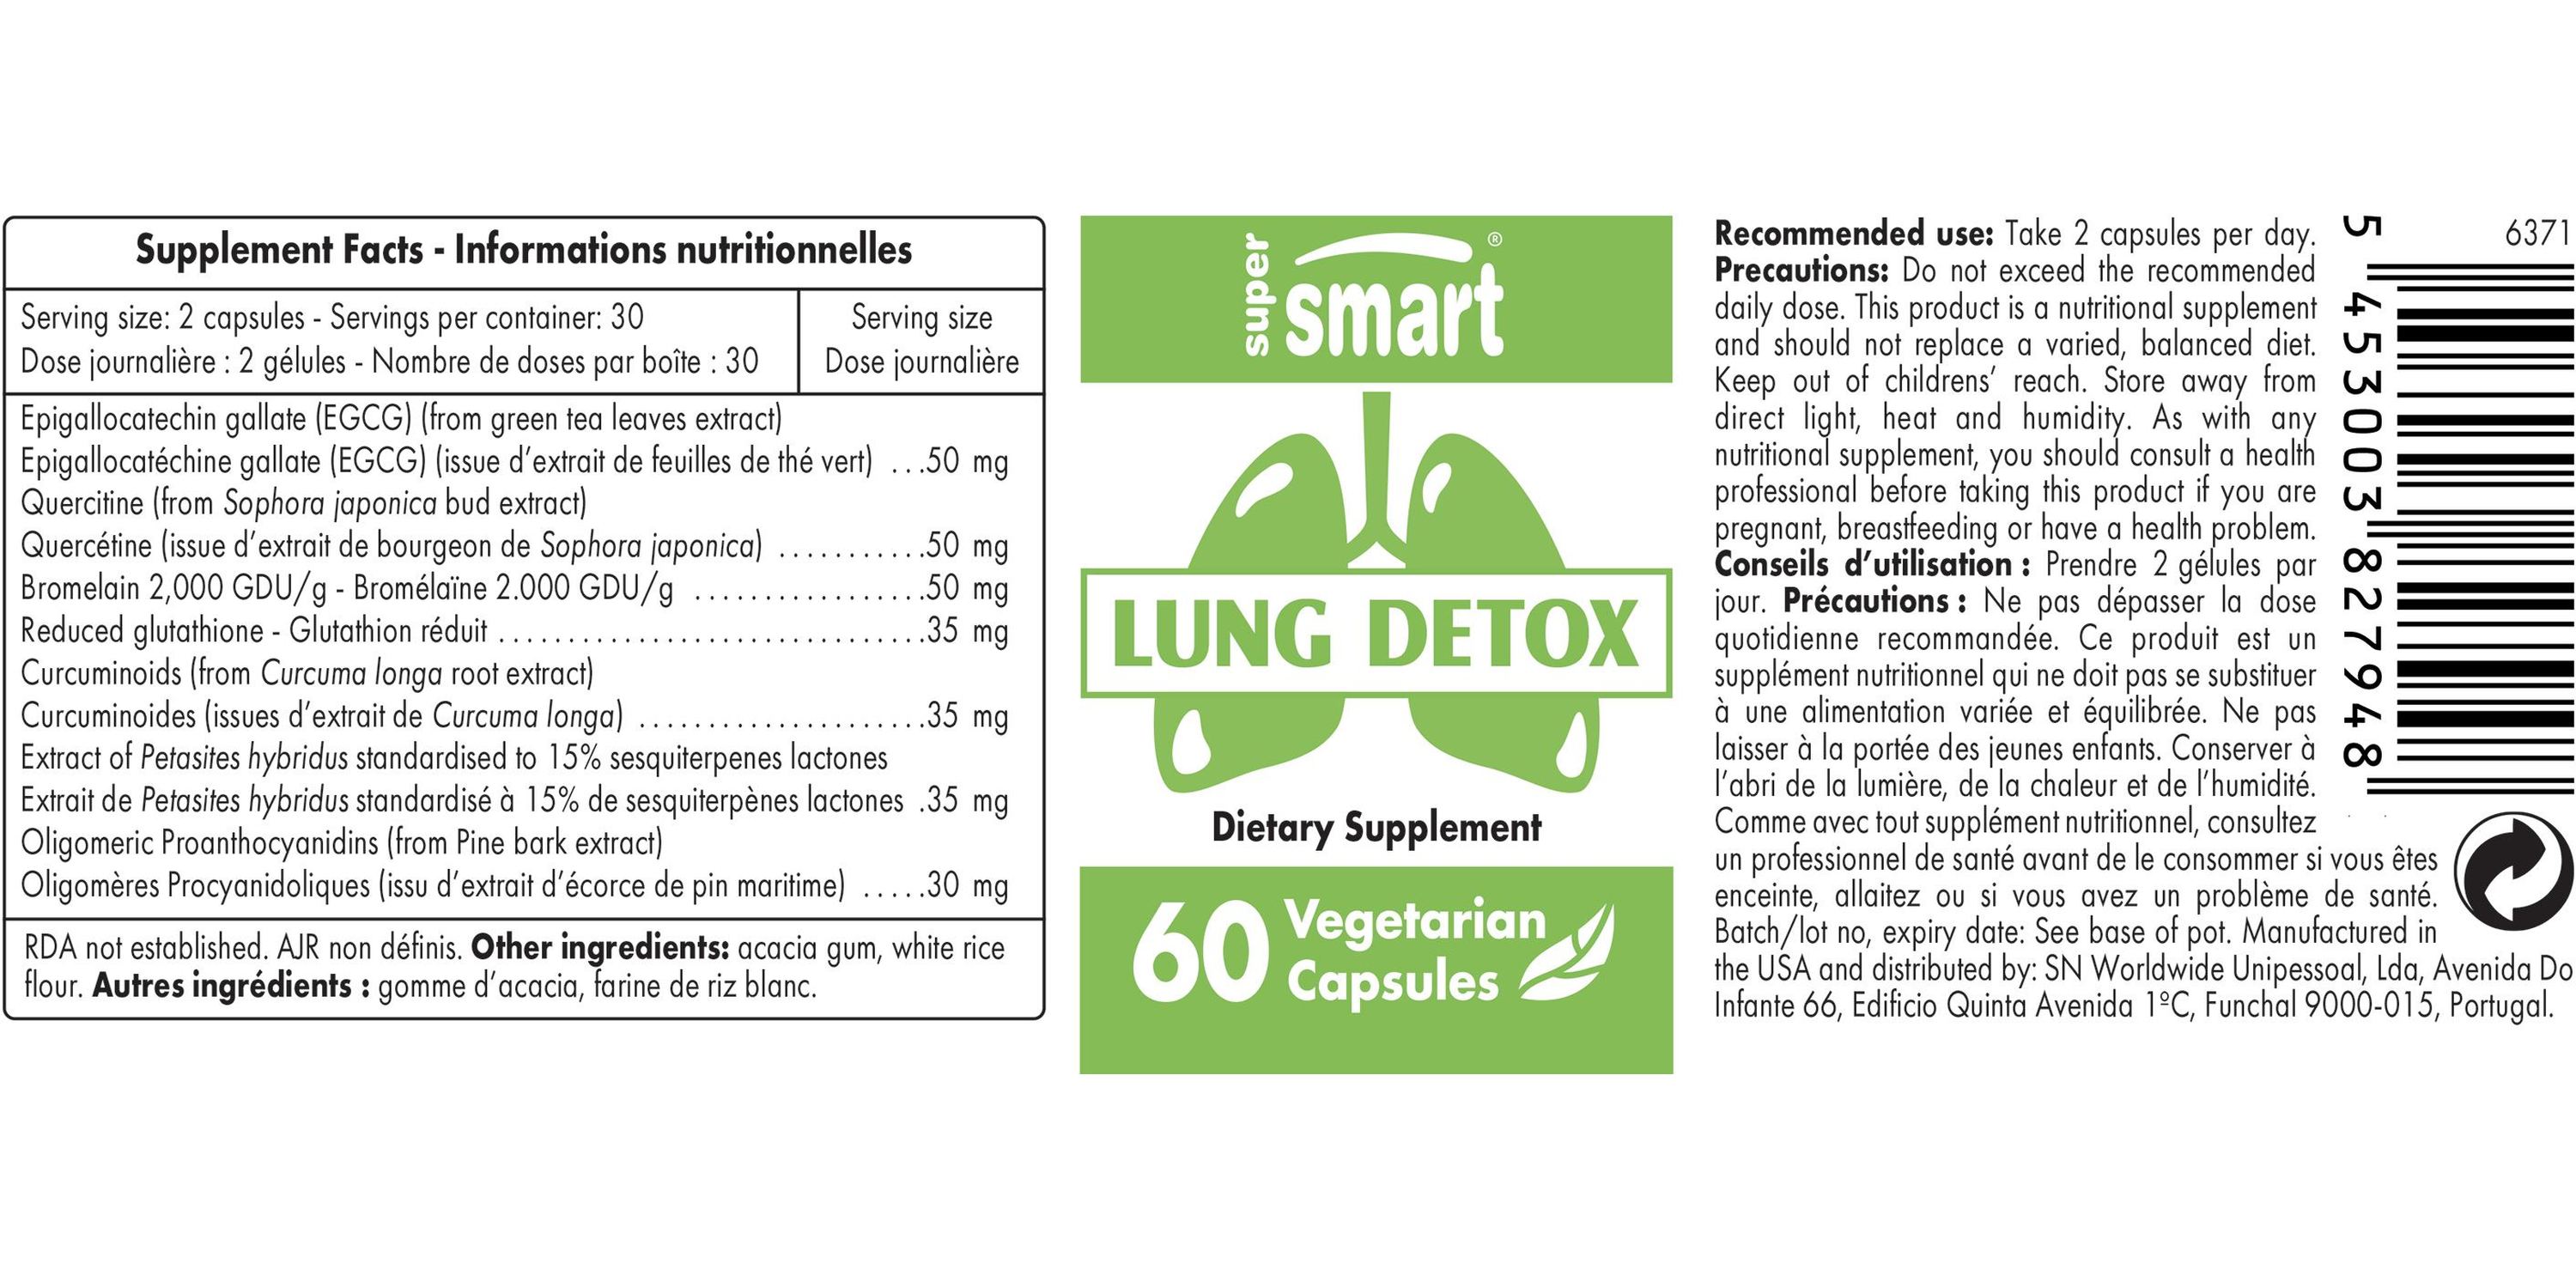 Lung Detox Supplement